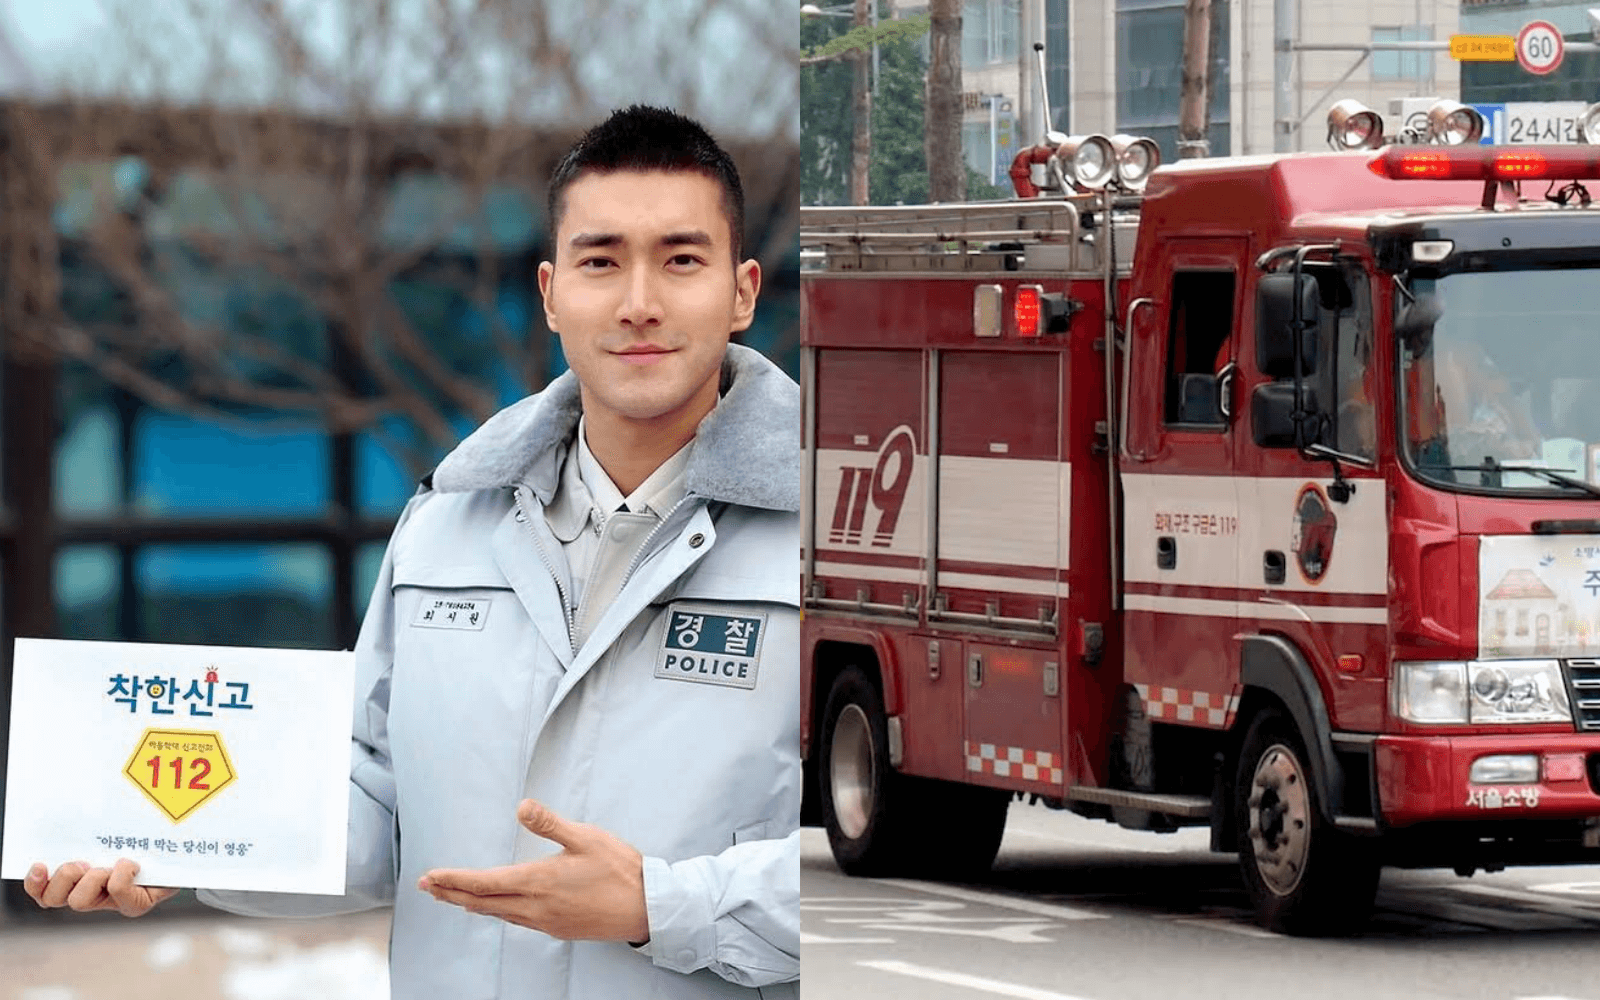 Berapa nomor darurat pemadam kebakaran